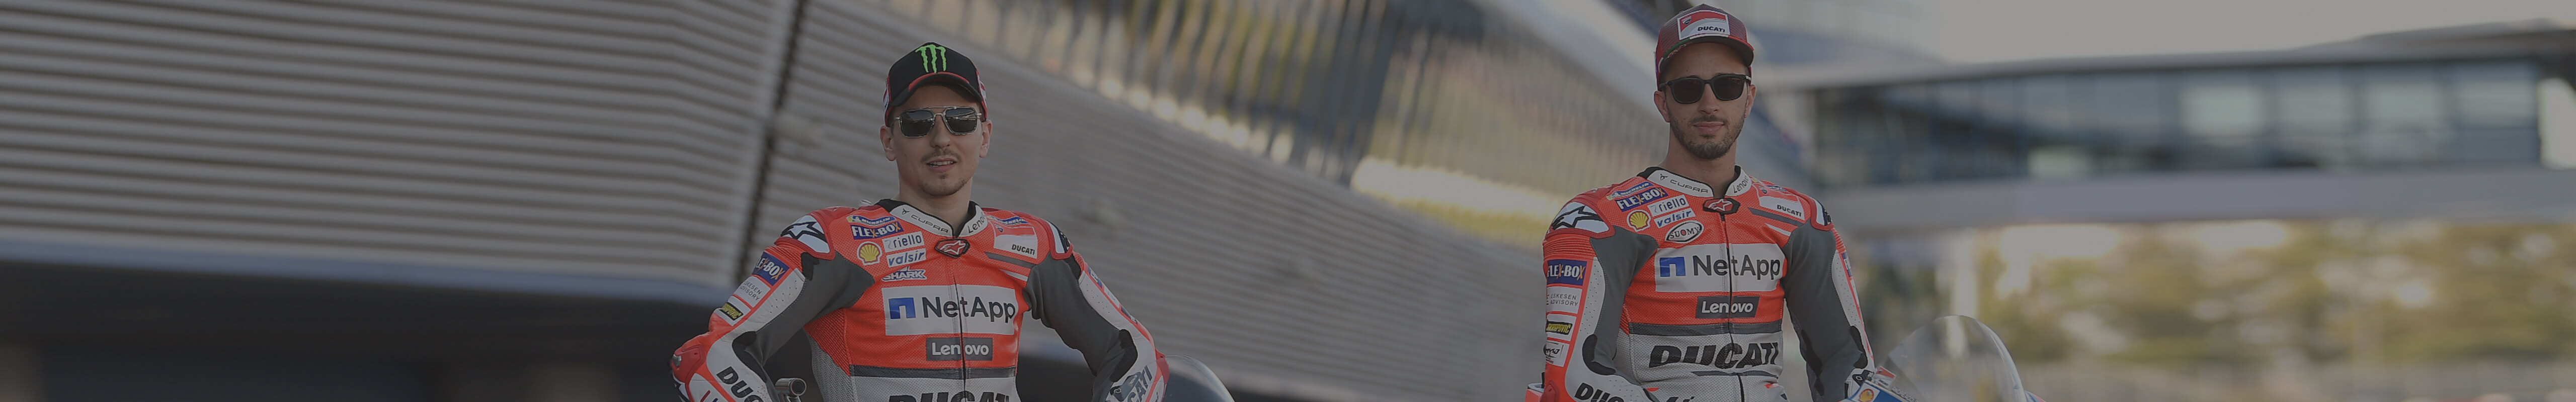 CUPRA als neuer Sponsor von Ducati bei der MotoGP